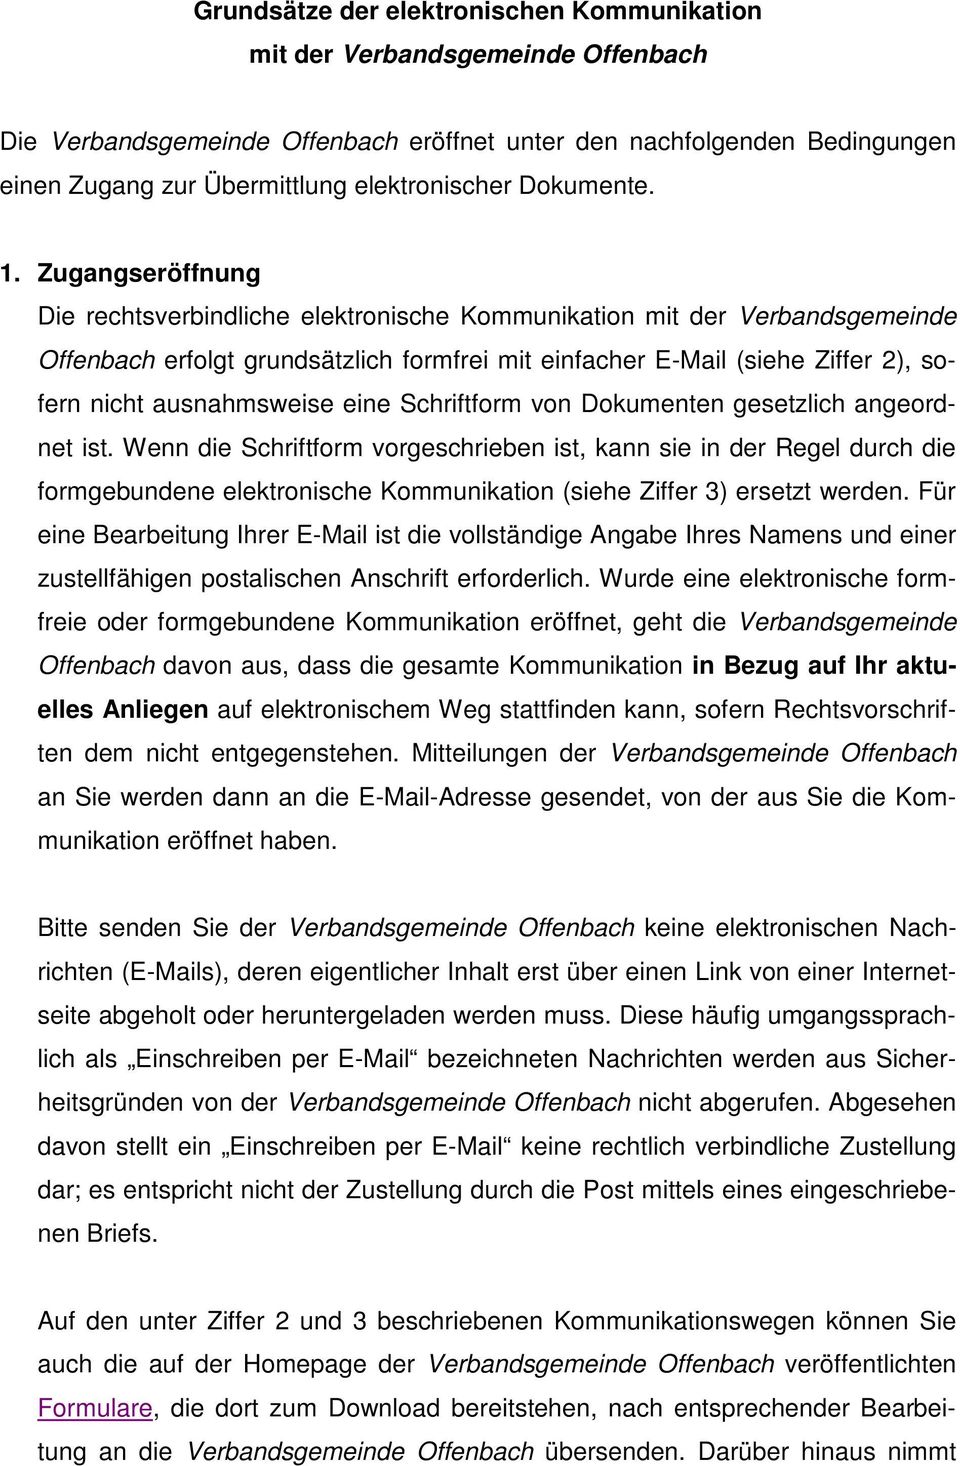 Zugangseröffnung Die rechtsverbindliche elektronische Kommunikation mit der Verbandsgemeinde Offenbach erfolgt grundsätzlich formfrei mit einfacher E-Mail (siehe Ziffer 2), sofern nicht ausnahmsweise